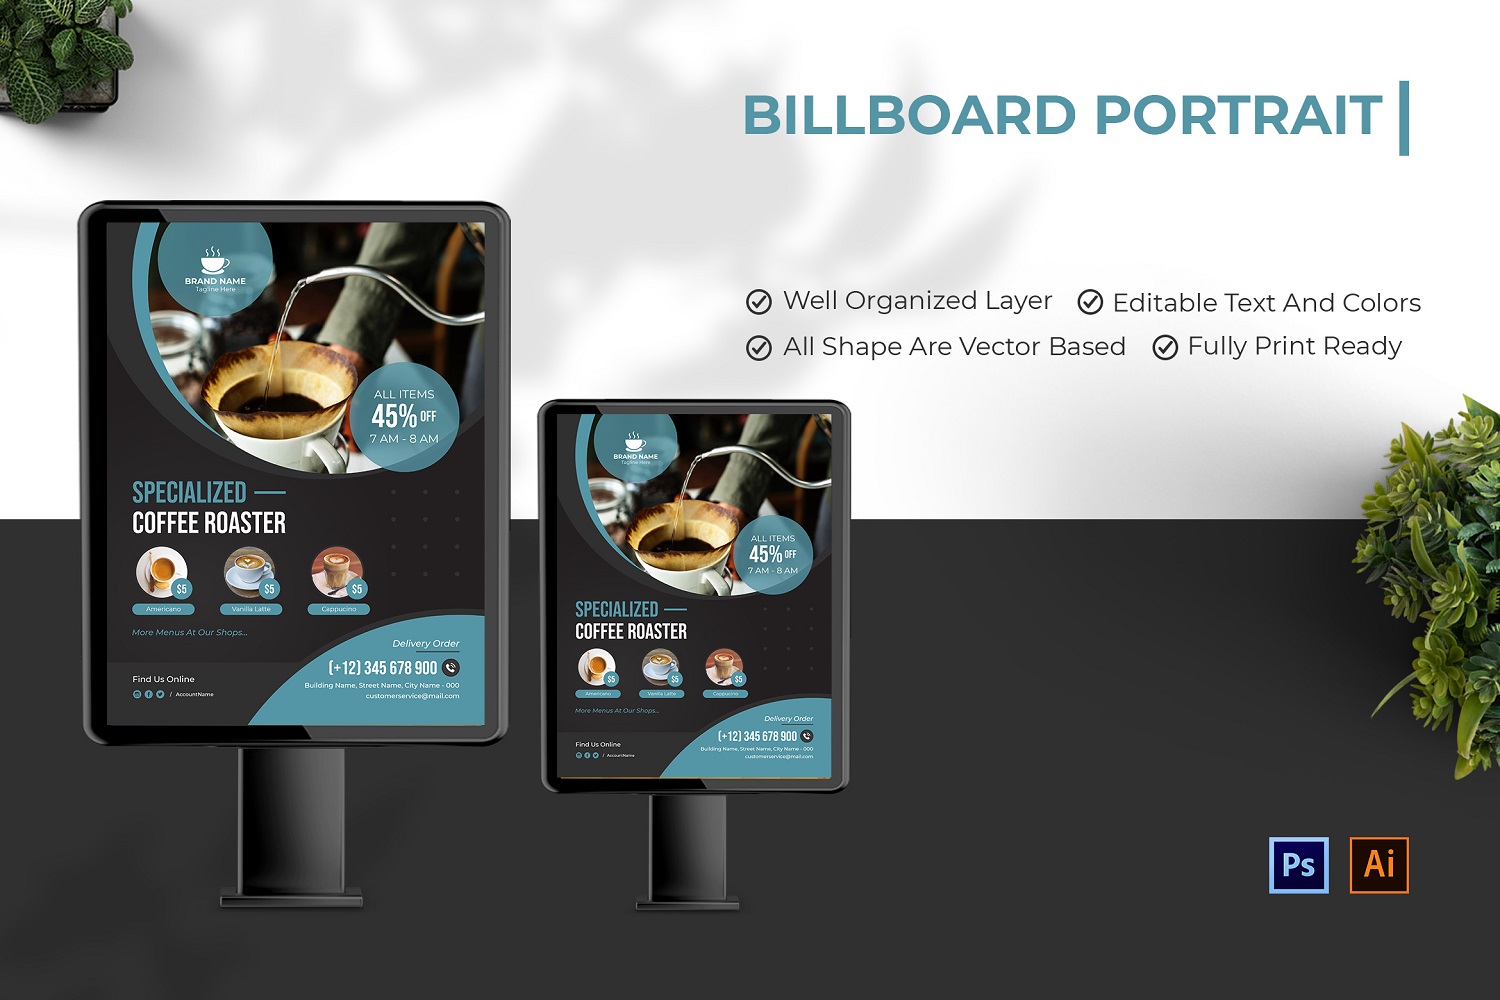 Special Coffee Roaster Billboard Portrait